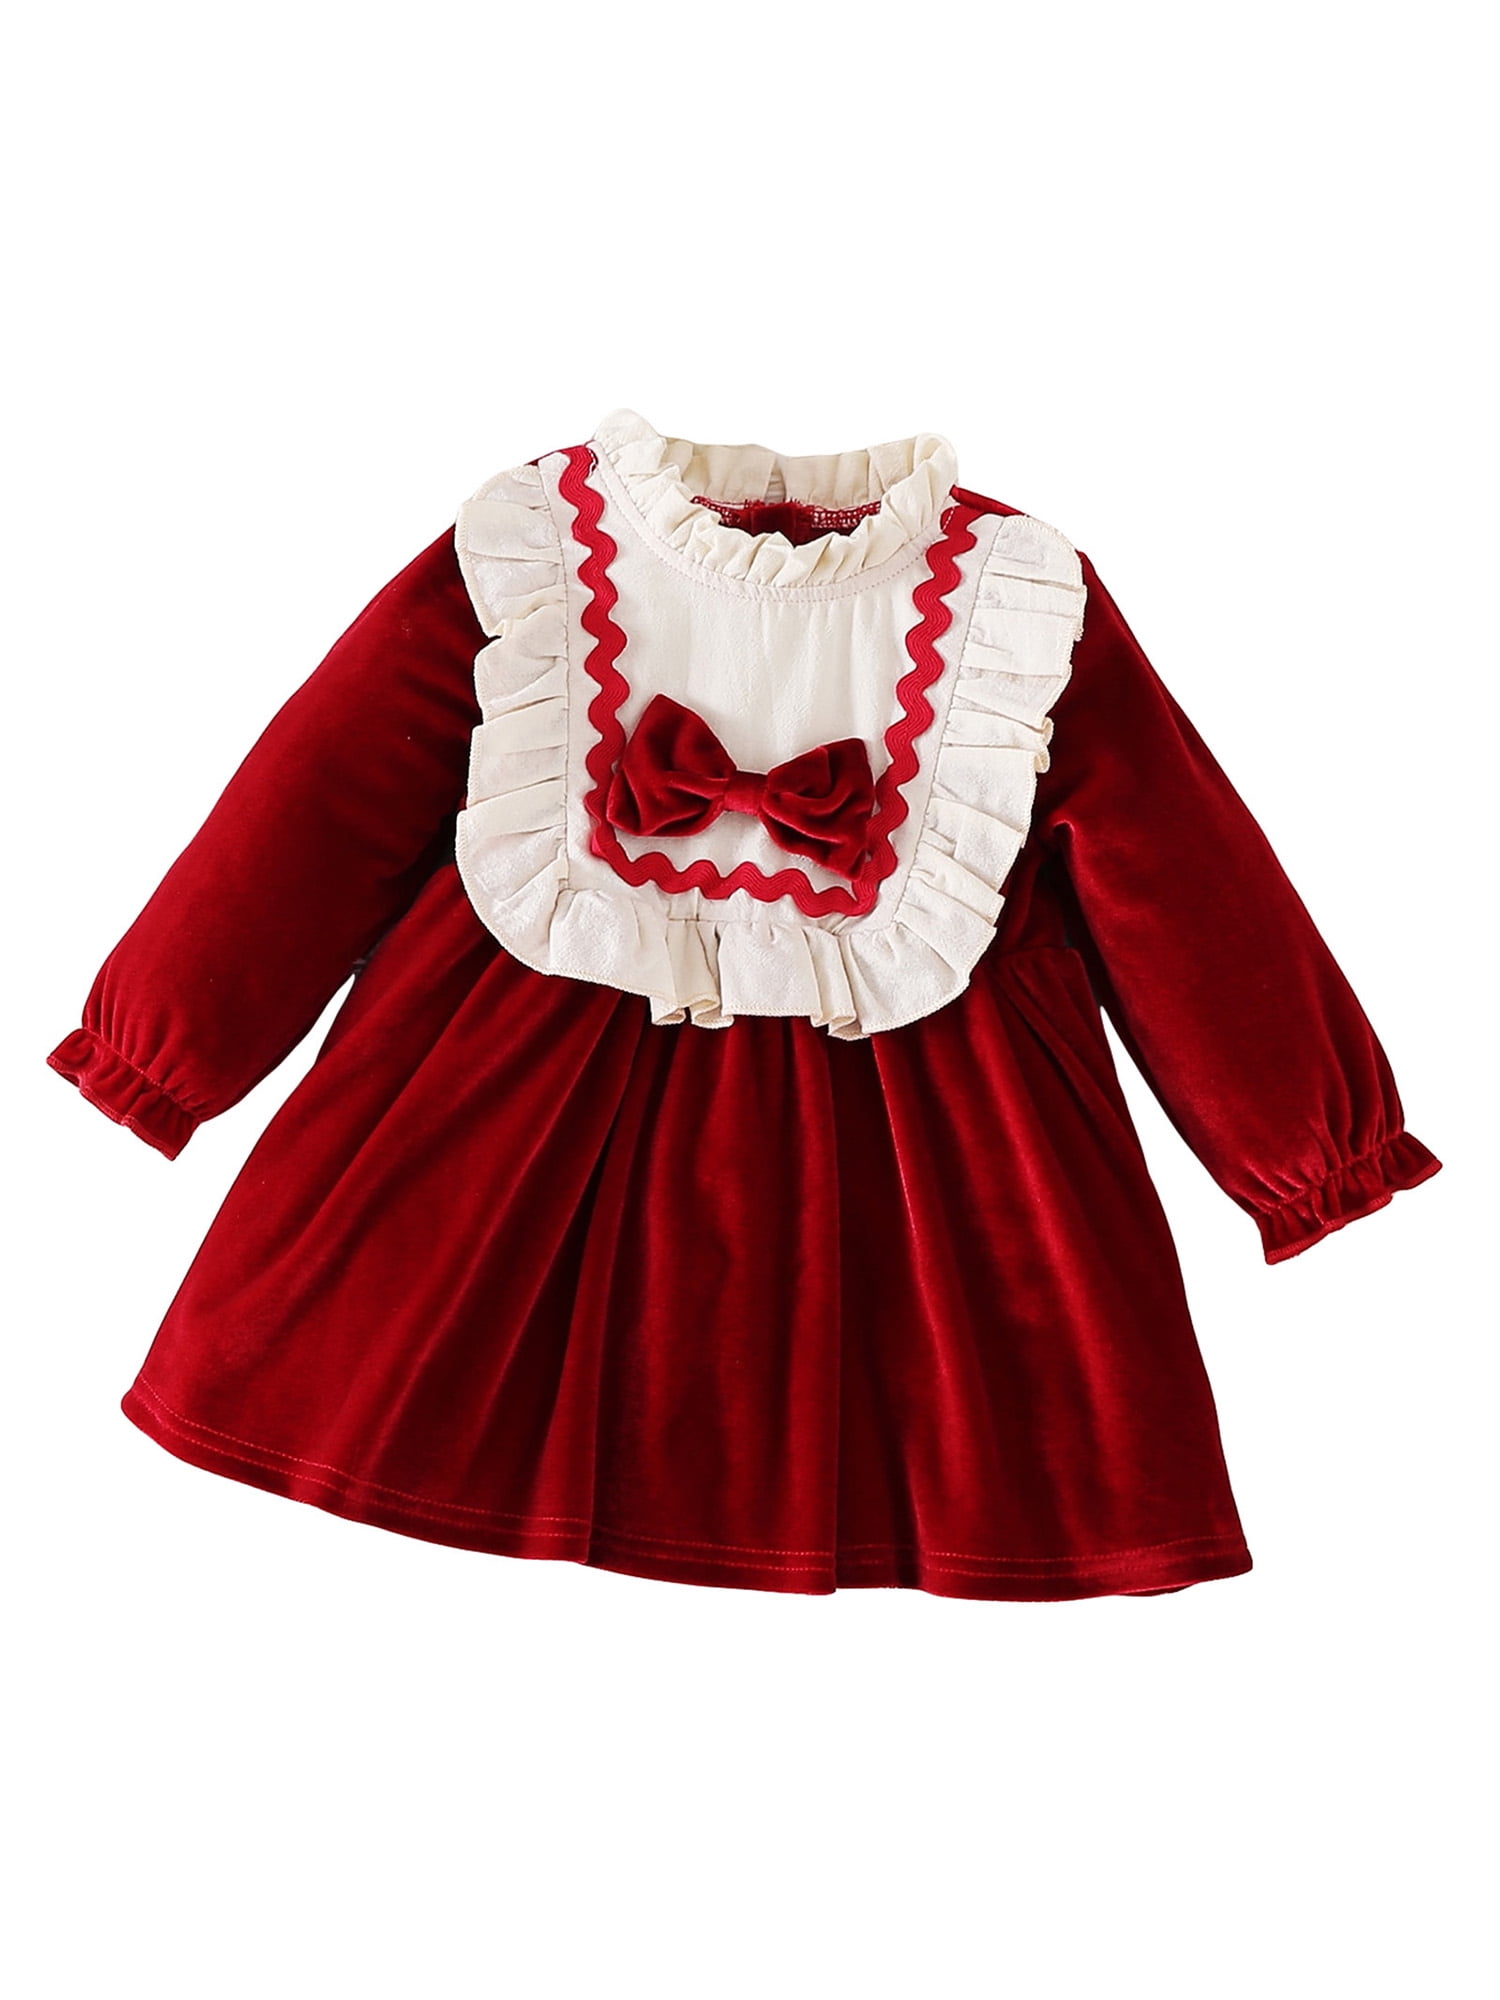 Bslissey Toddler Baby Girls Christmas Velvet Dress Long Sleeve Ruffled ...